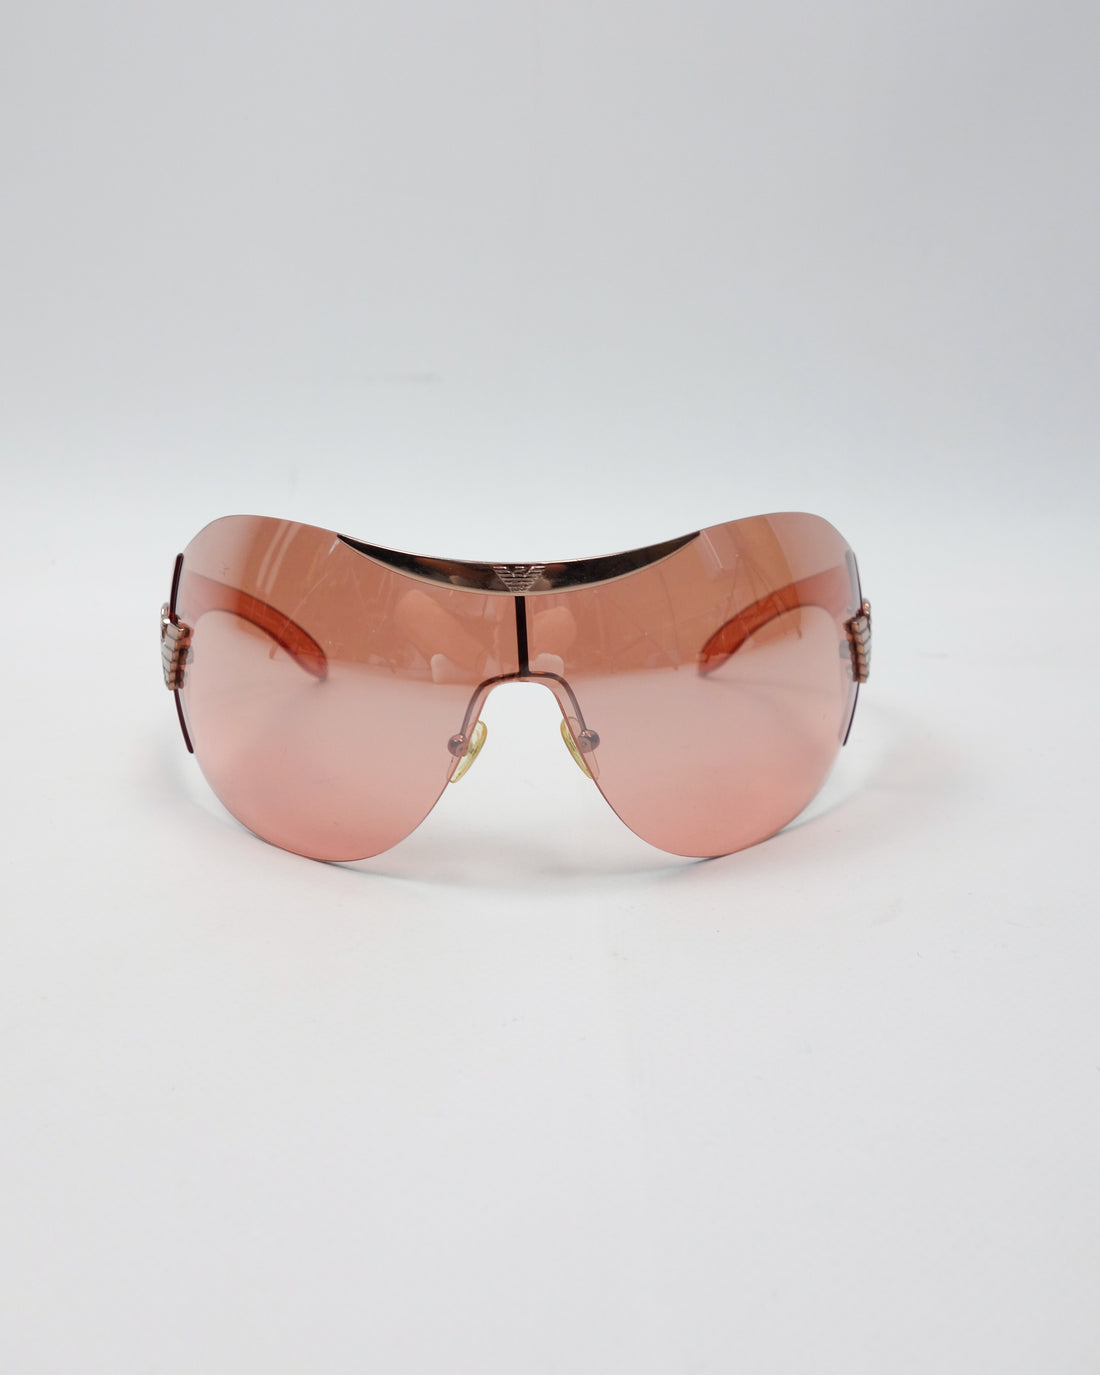 Armani Full Mask Copper Sunglasses 2000's